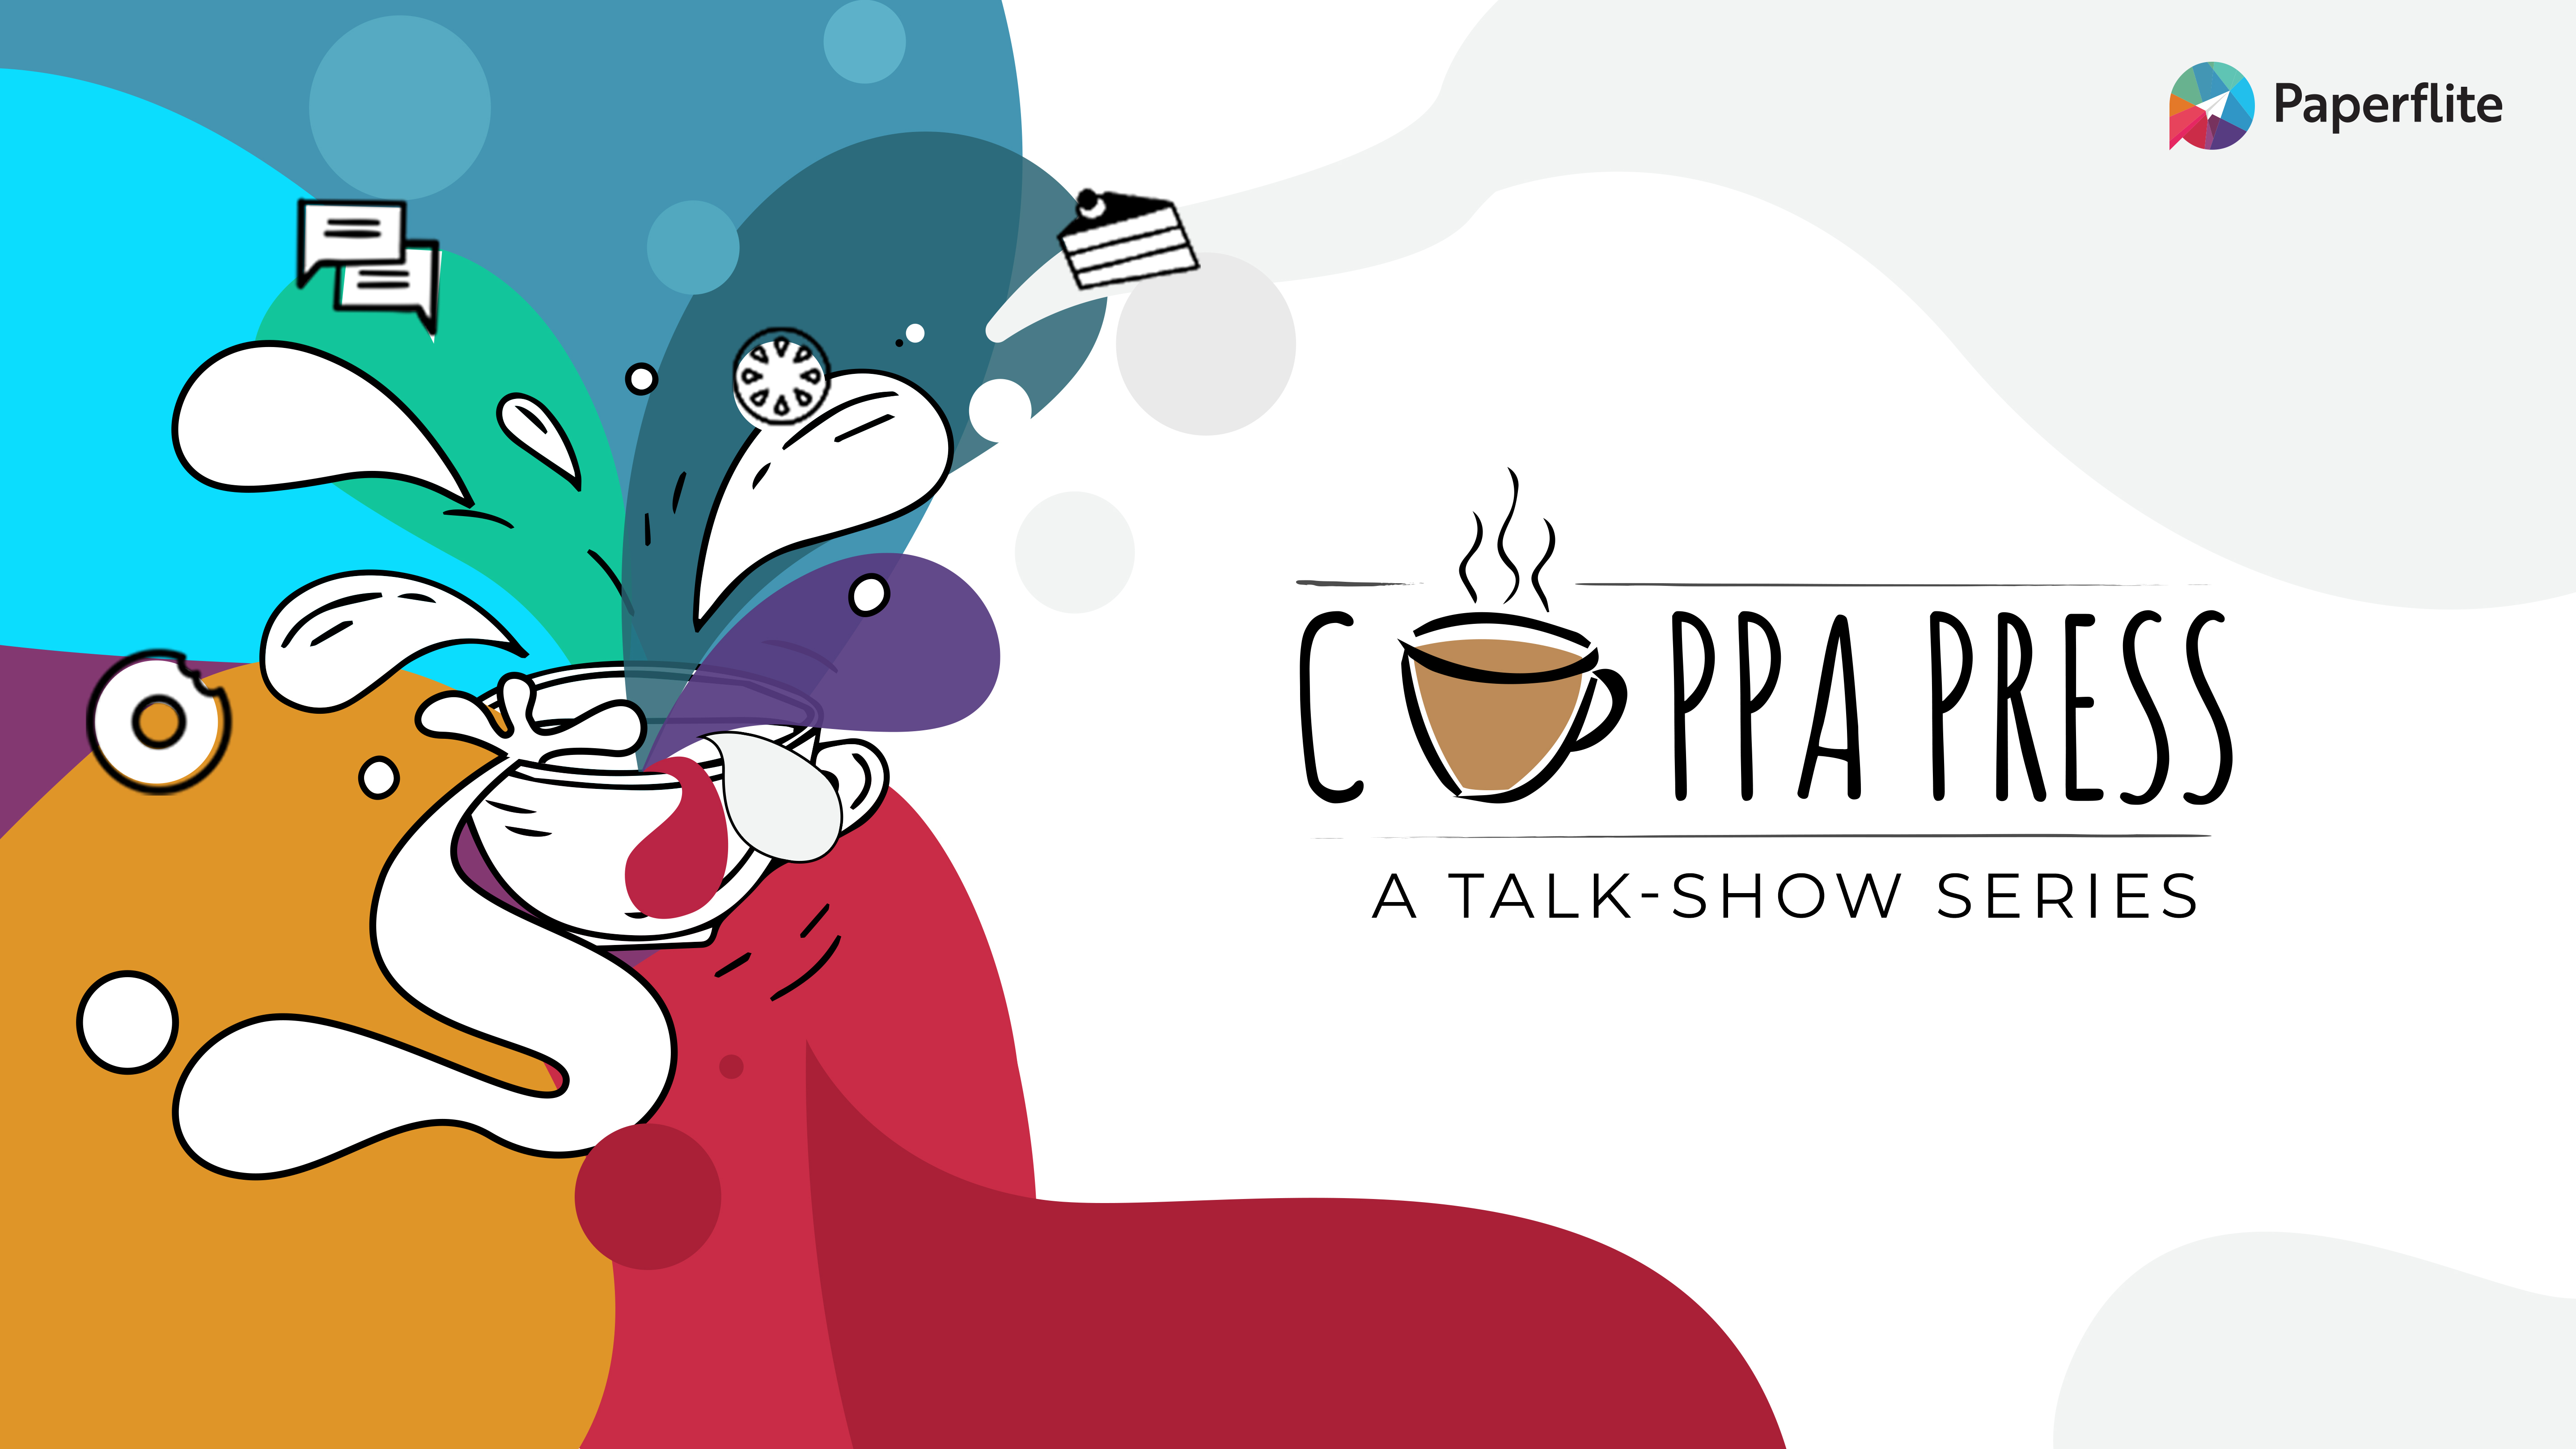 Cuppa Press - A micro talk-show series
